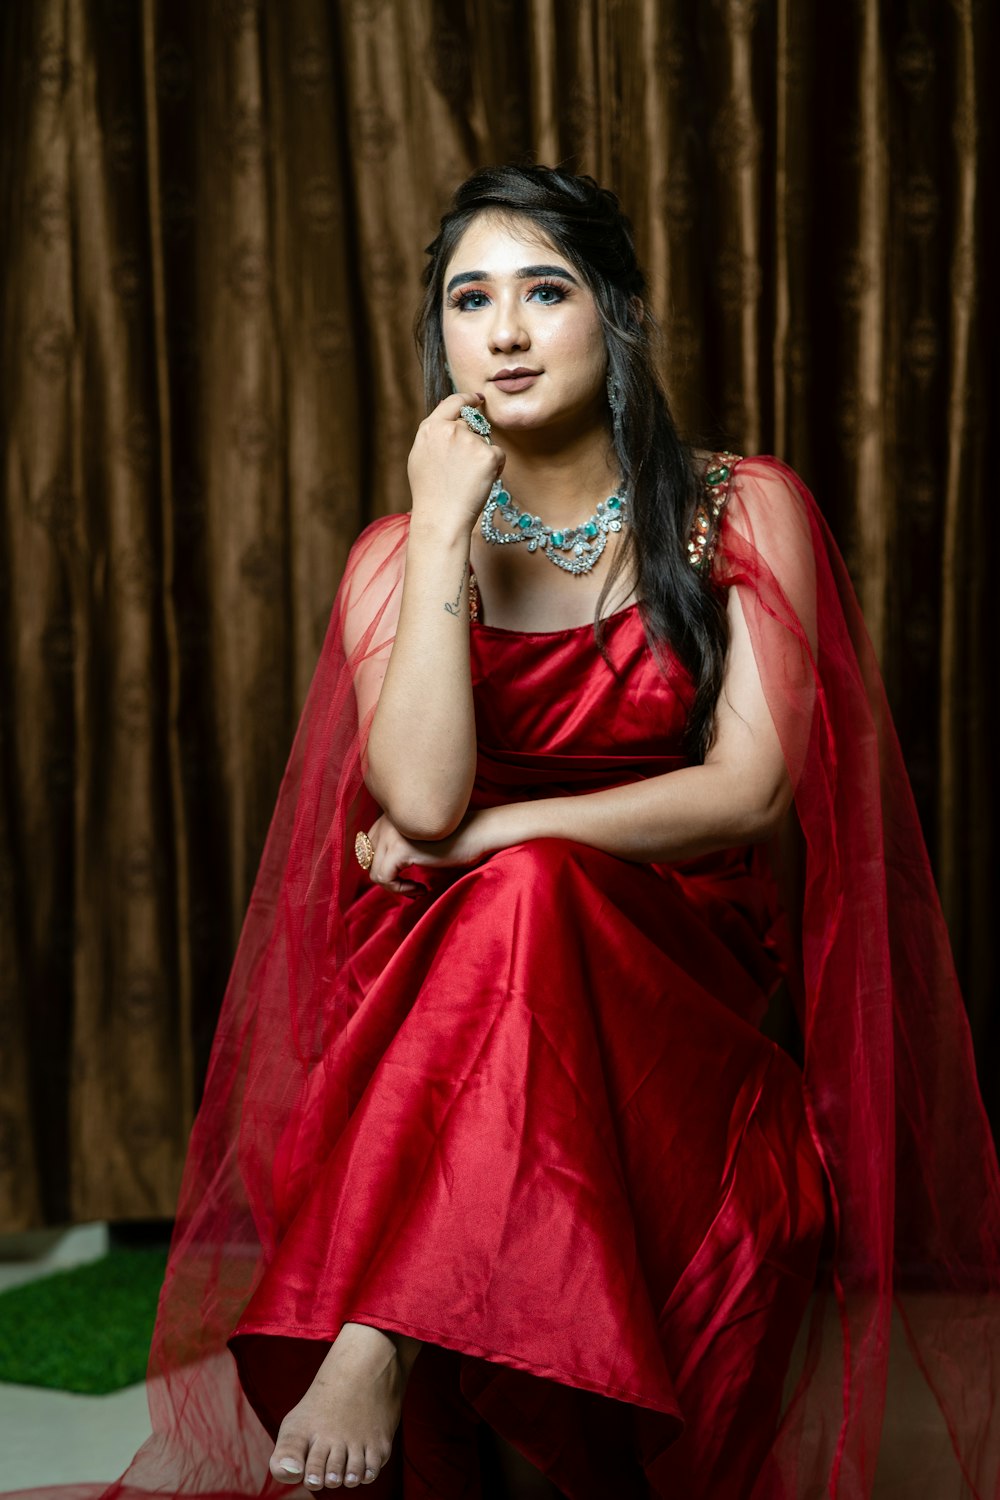 Eine Frau in einem roten Kleid posiert für ein Foto